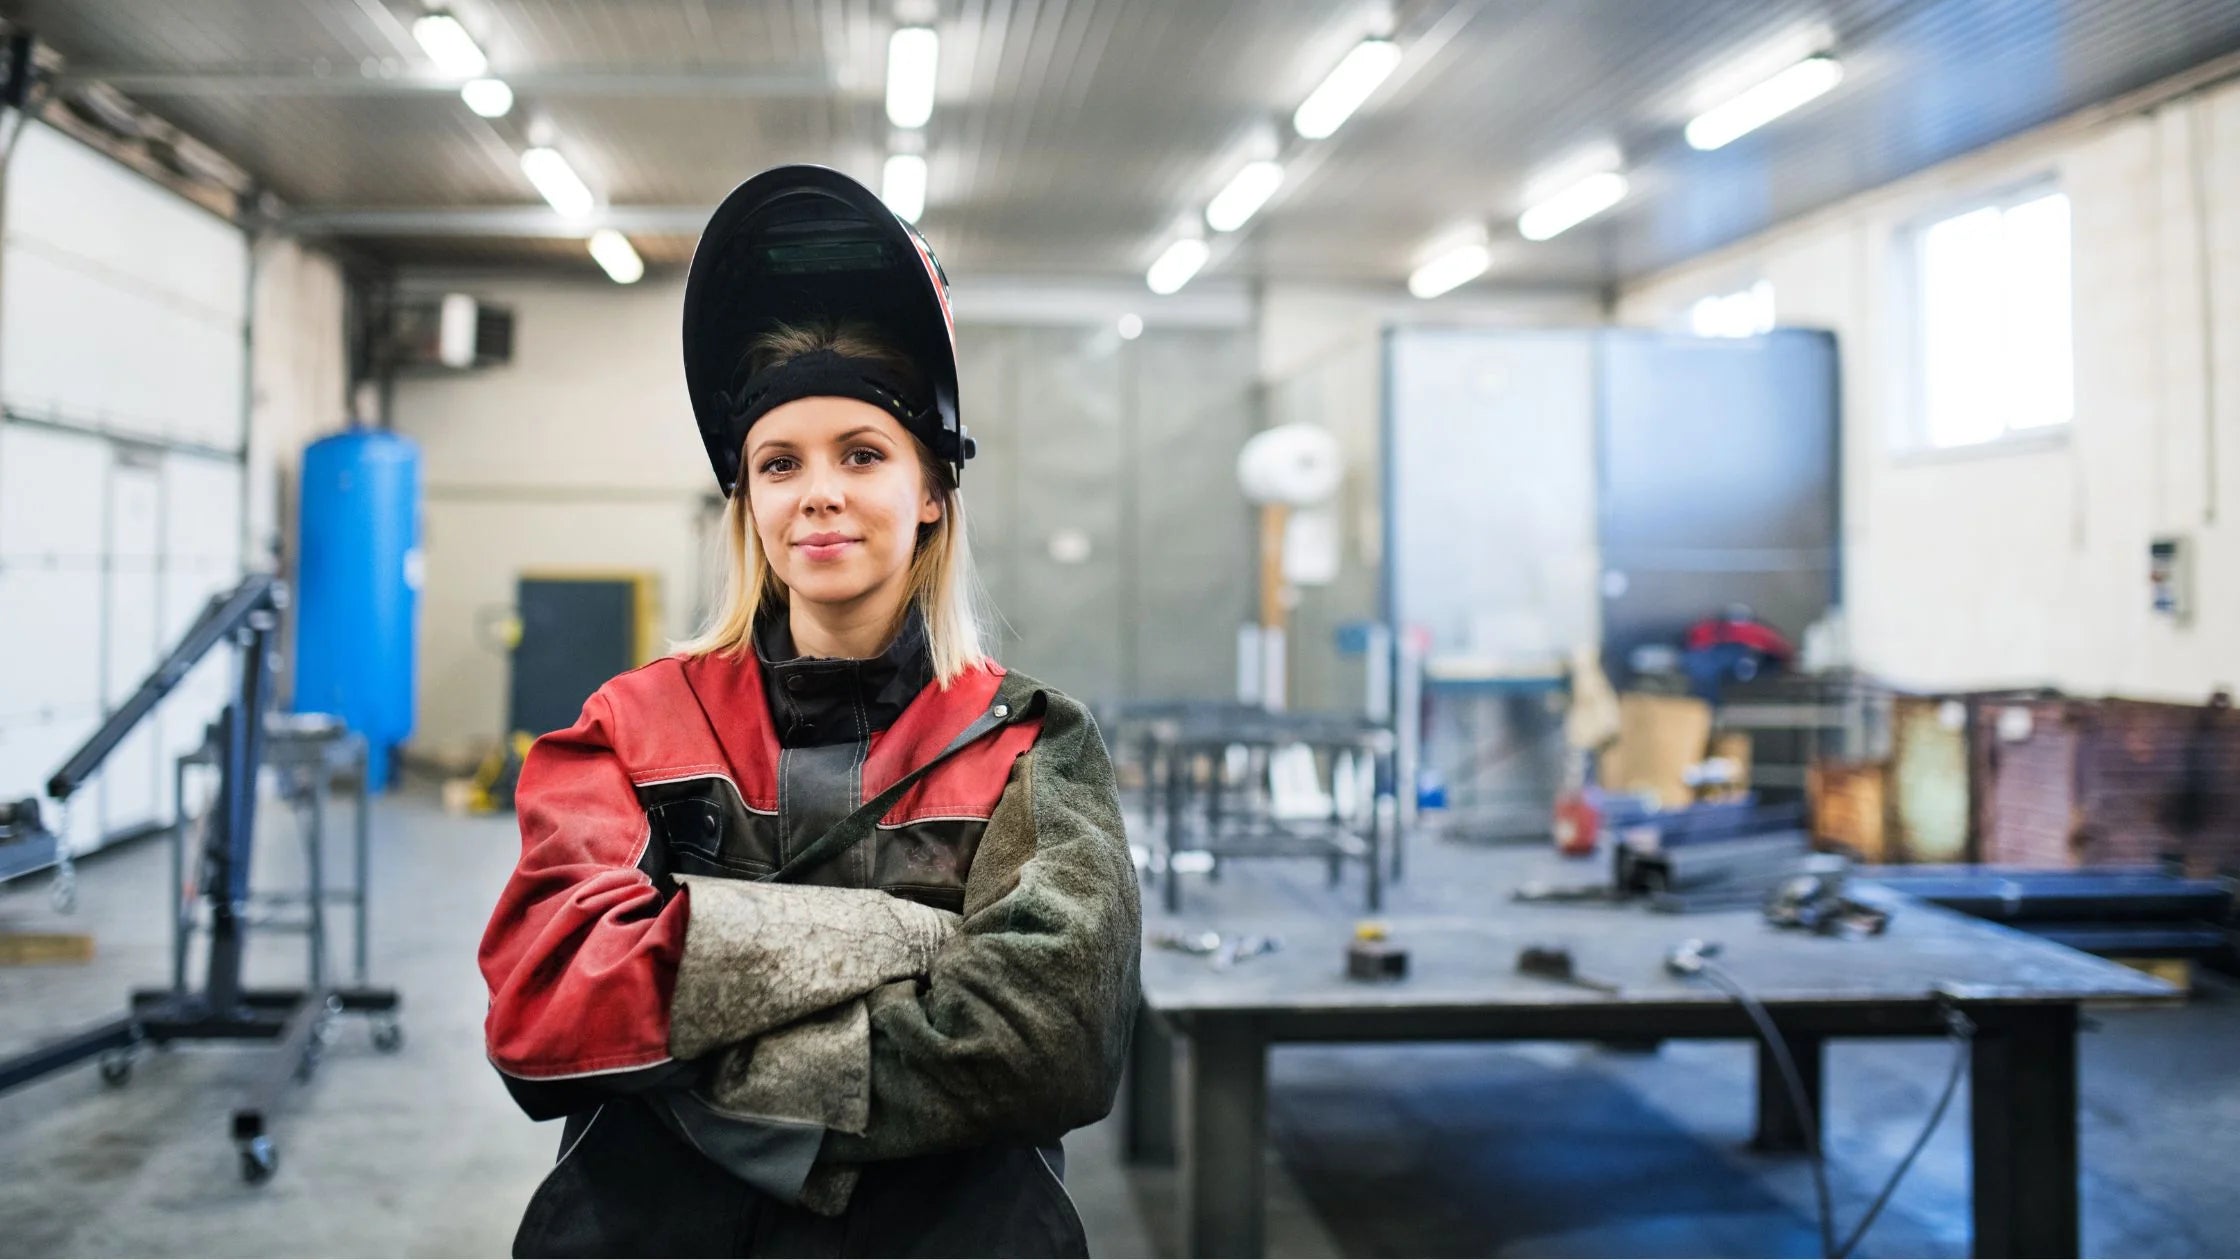 MIG welders Safety equipment for both men and women welders